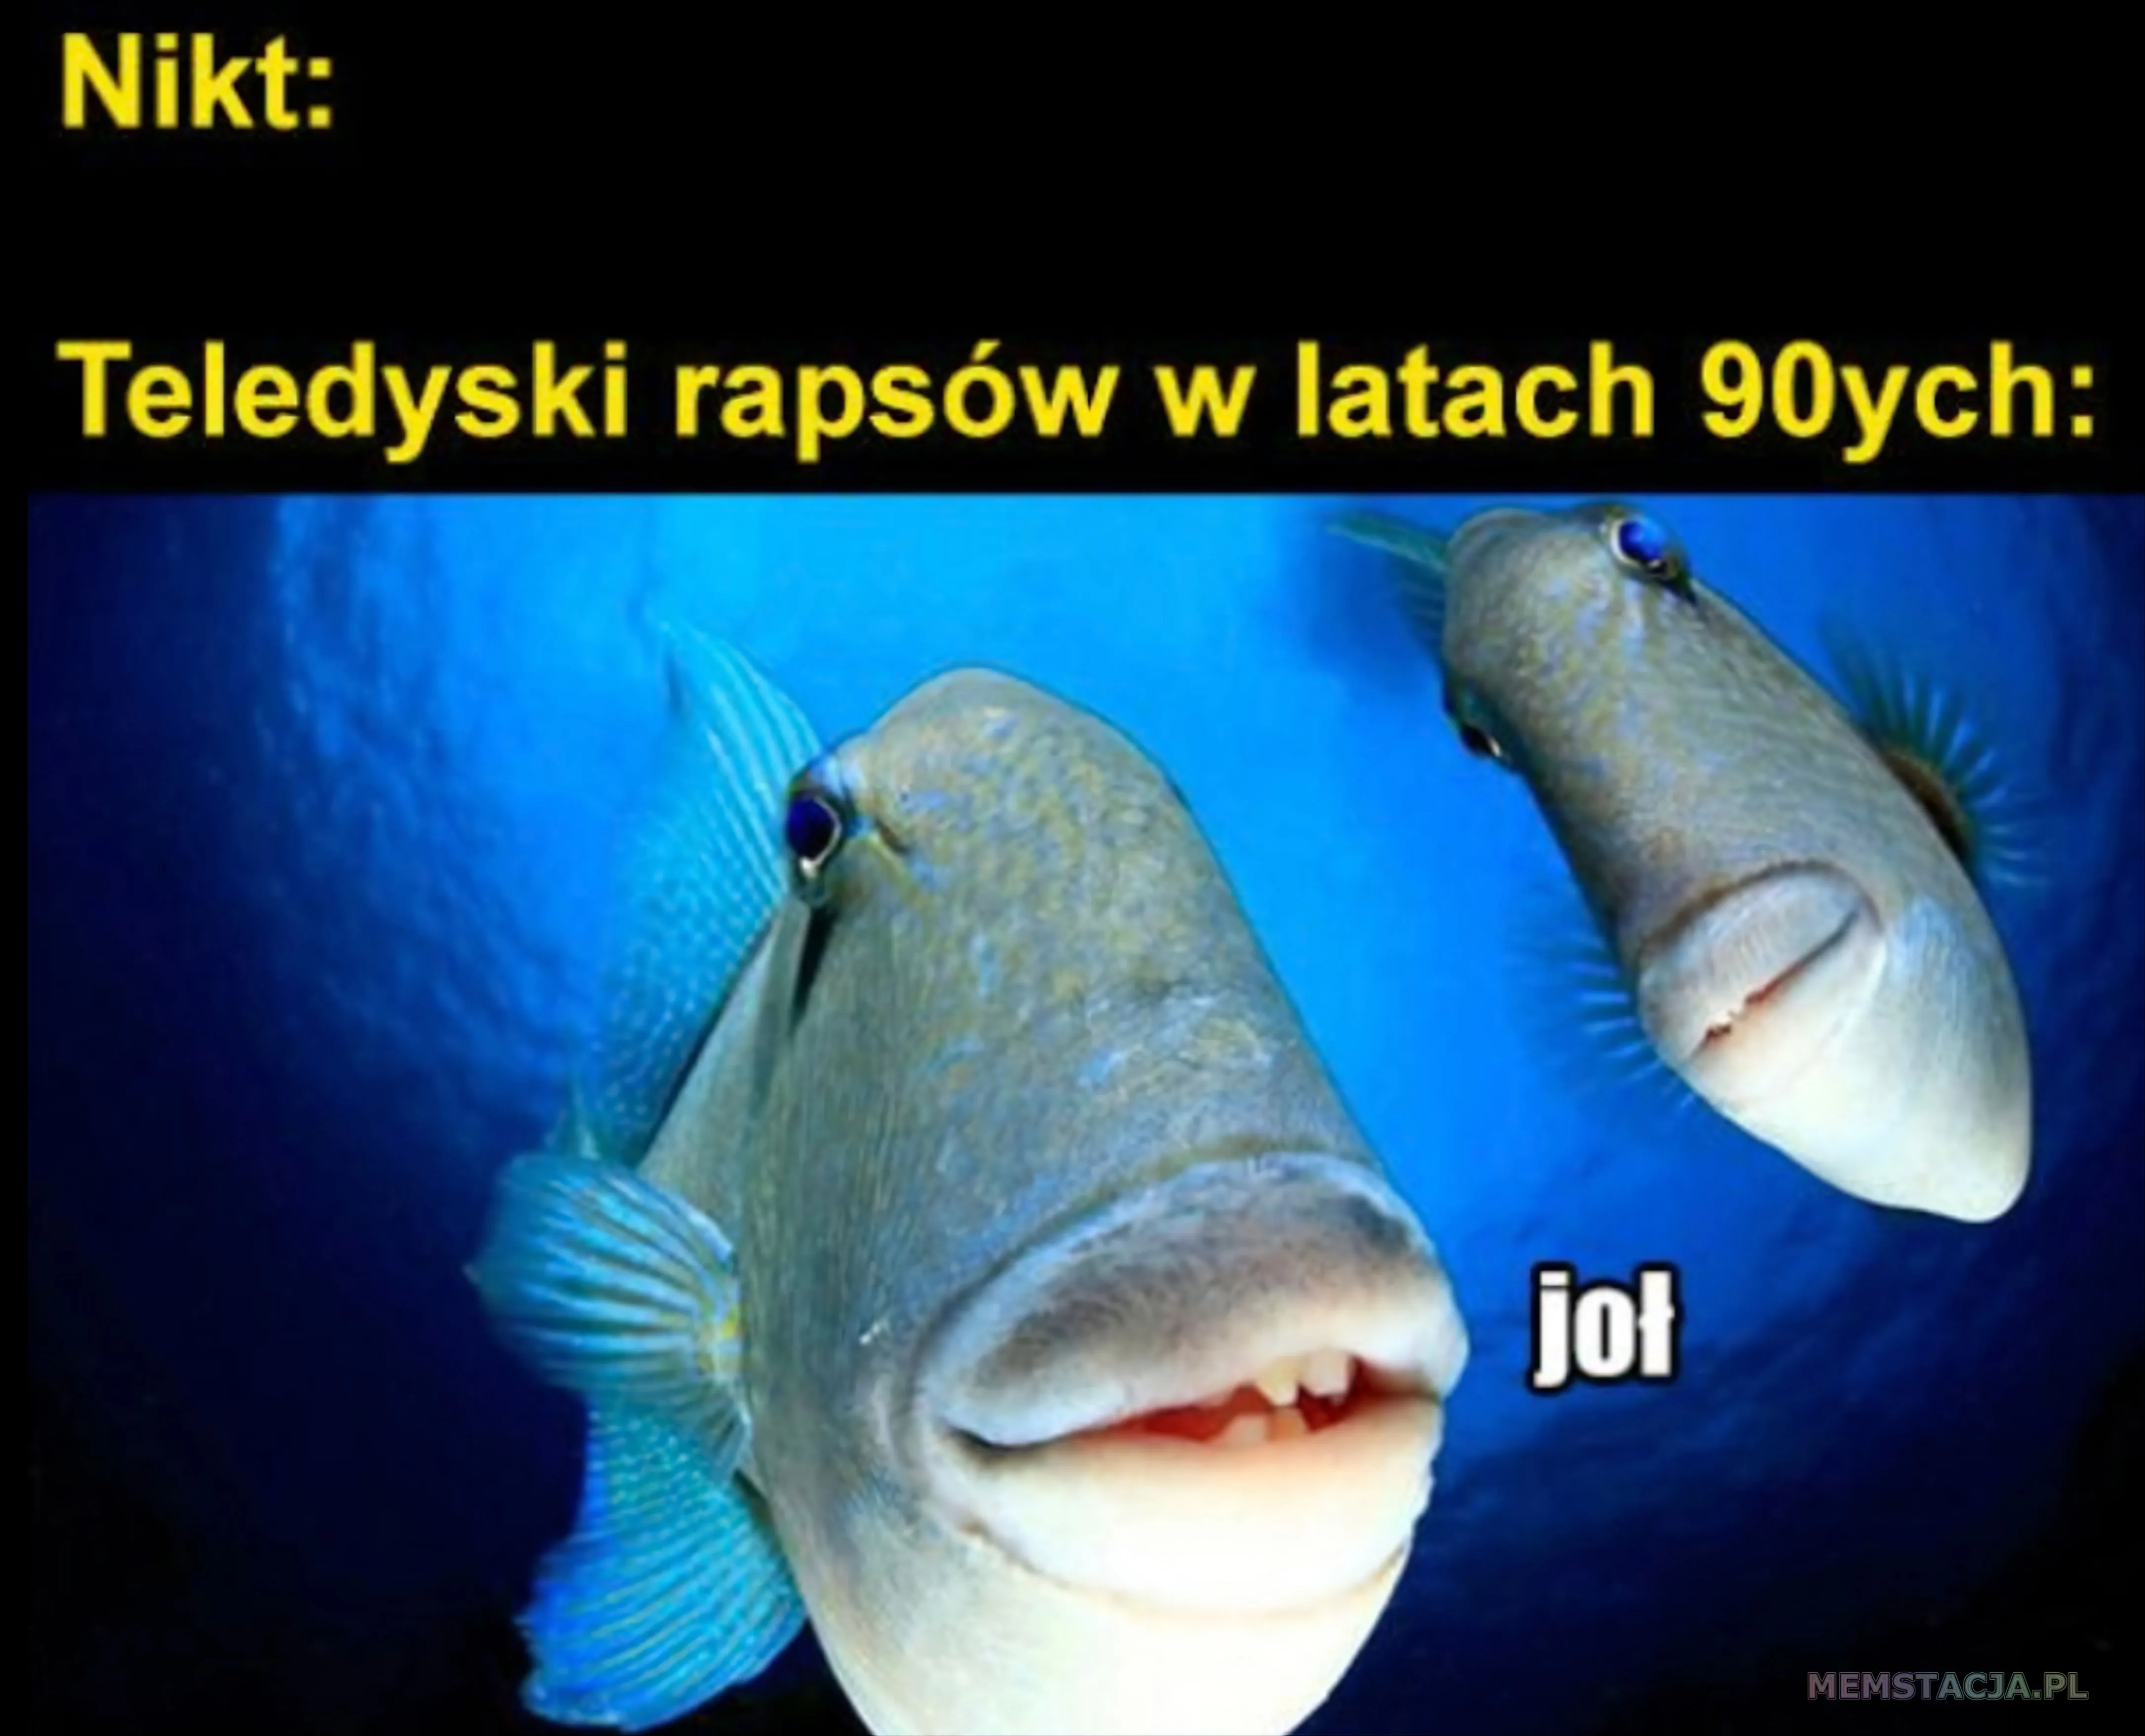 Zdjęcie przedstawiające rybki mówiące joł: 'Nikt: Teledyski rapsów w latach 90ych'